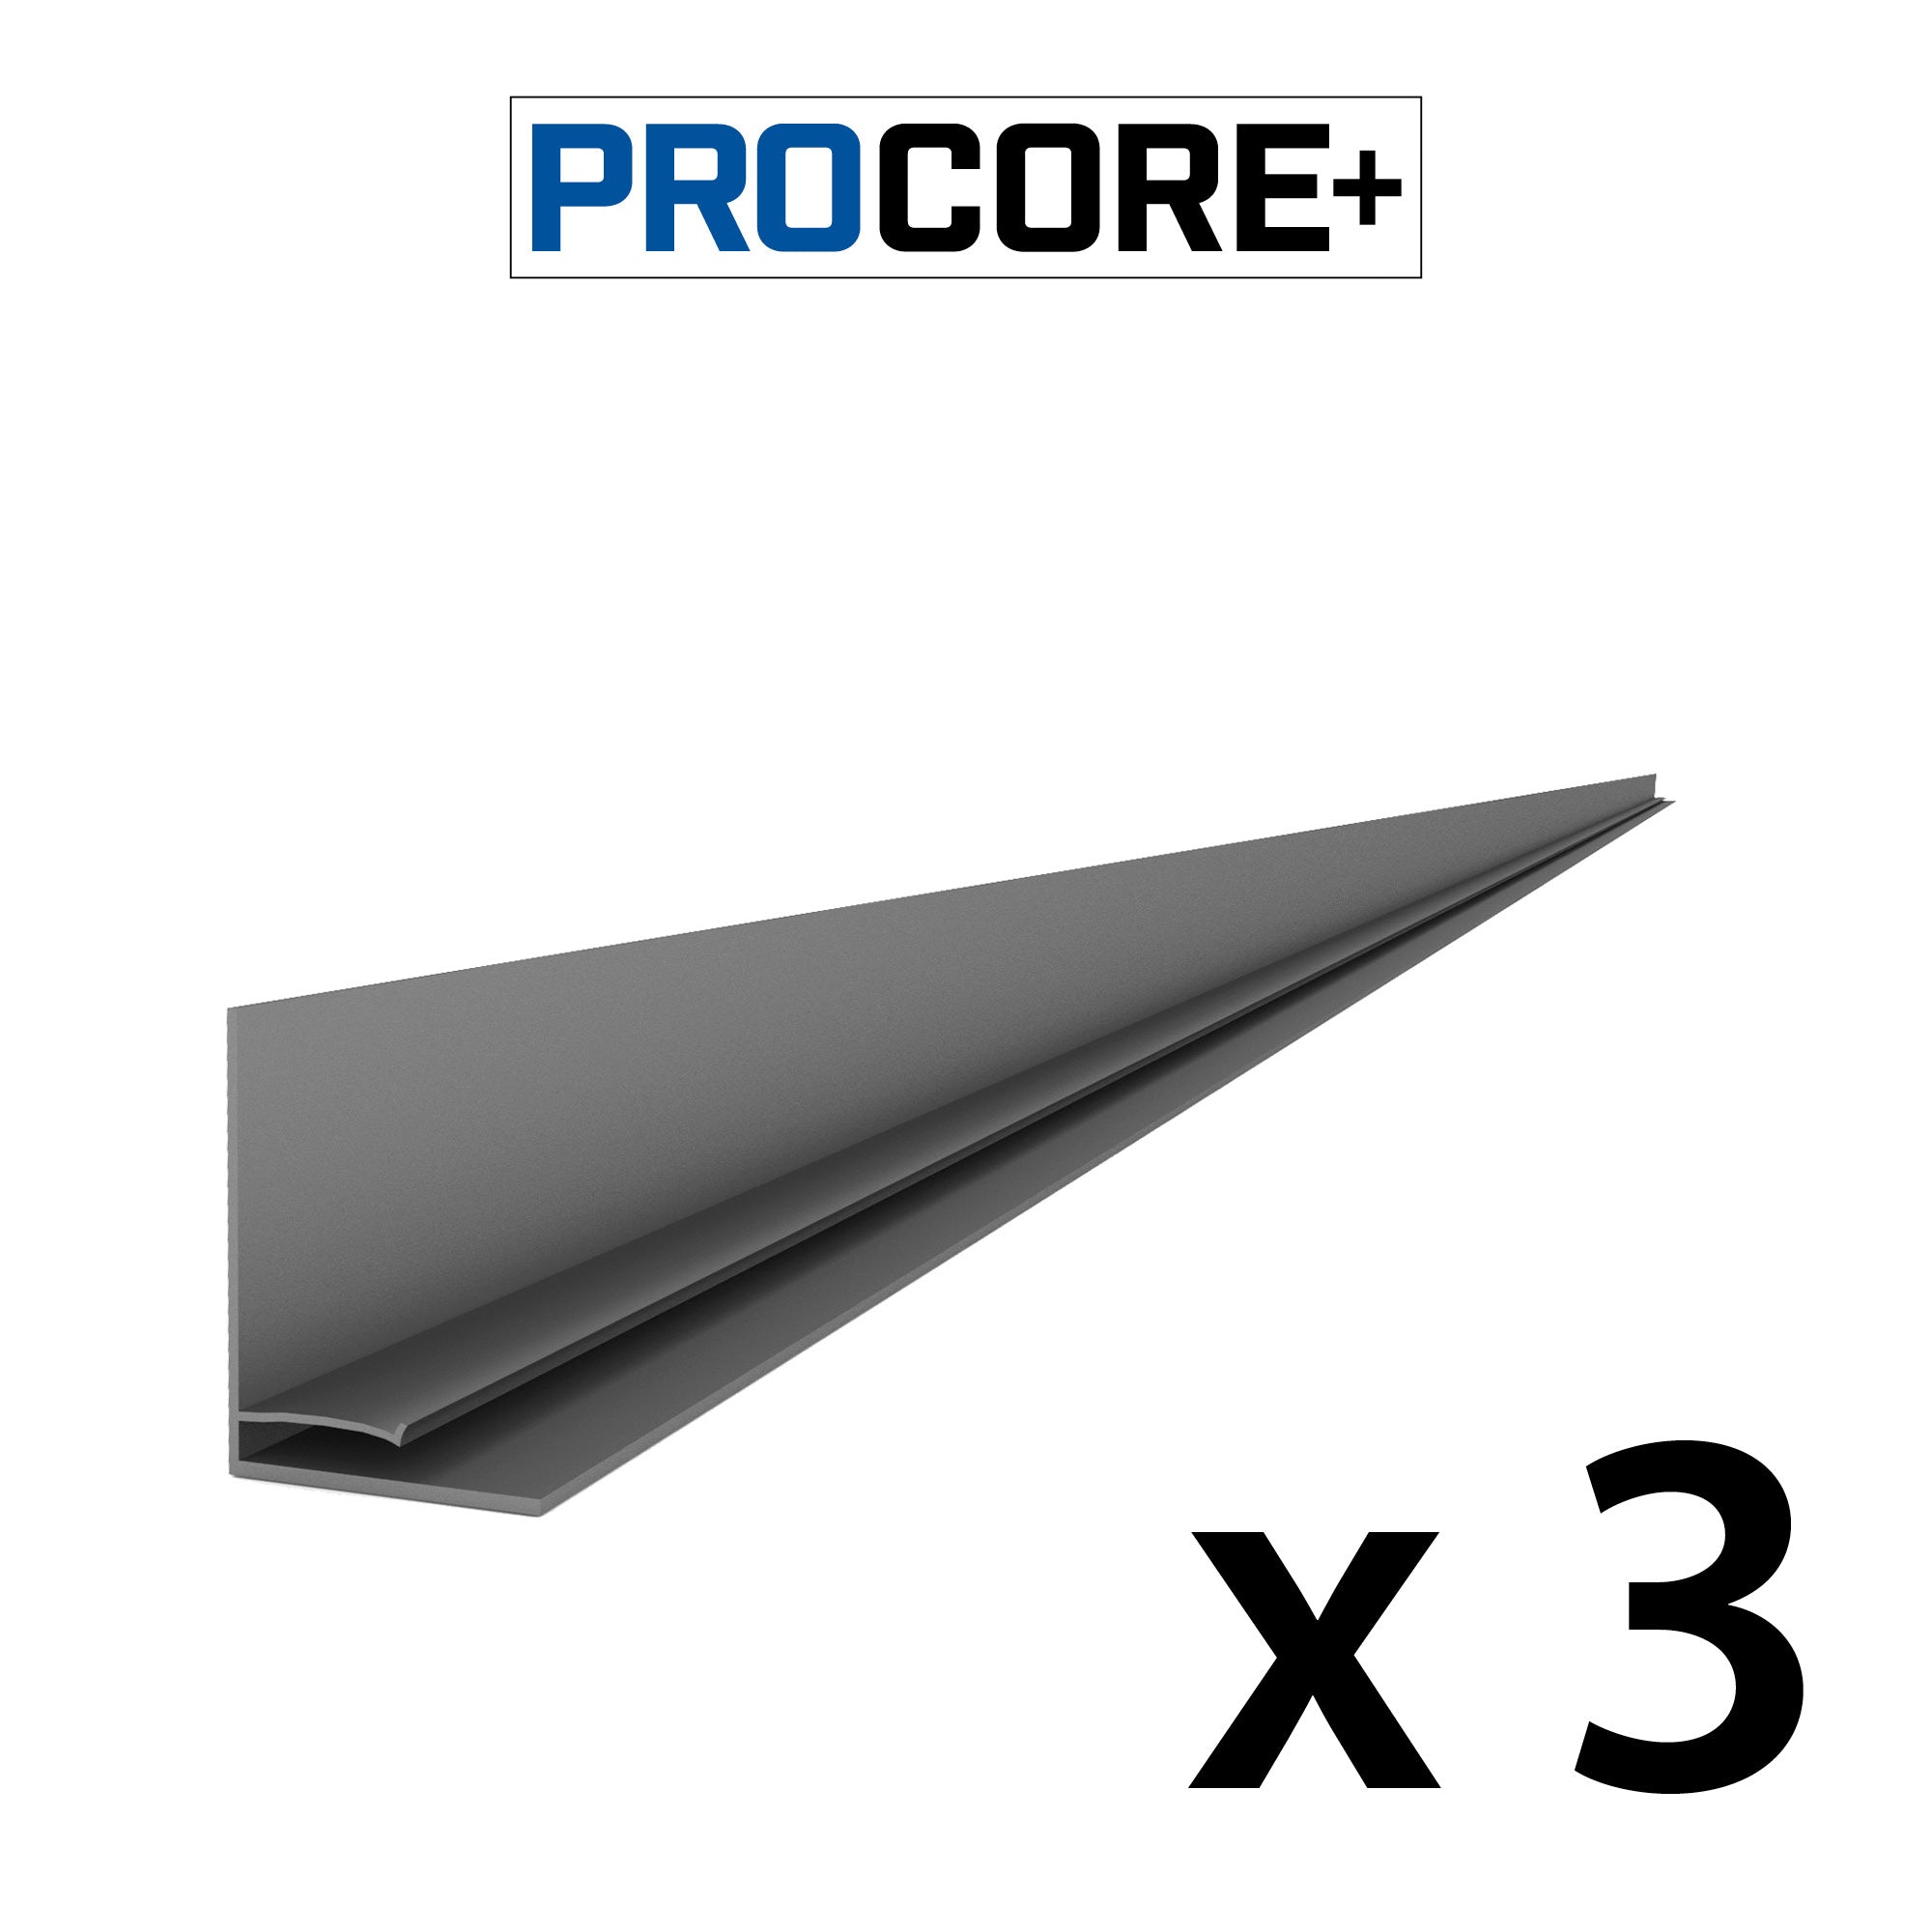 Proslat 8 ft. PROCORE+ PVC Top Trim Pack - 3 Pack - L Trims